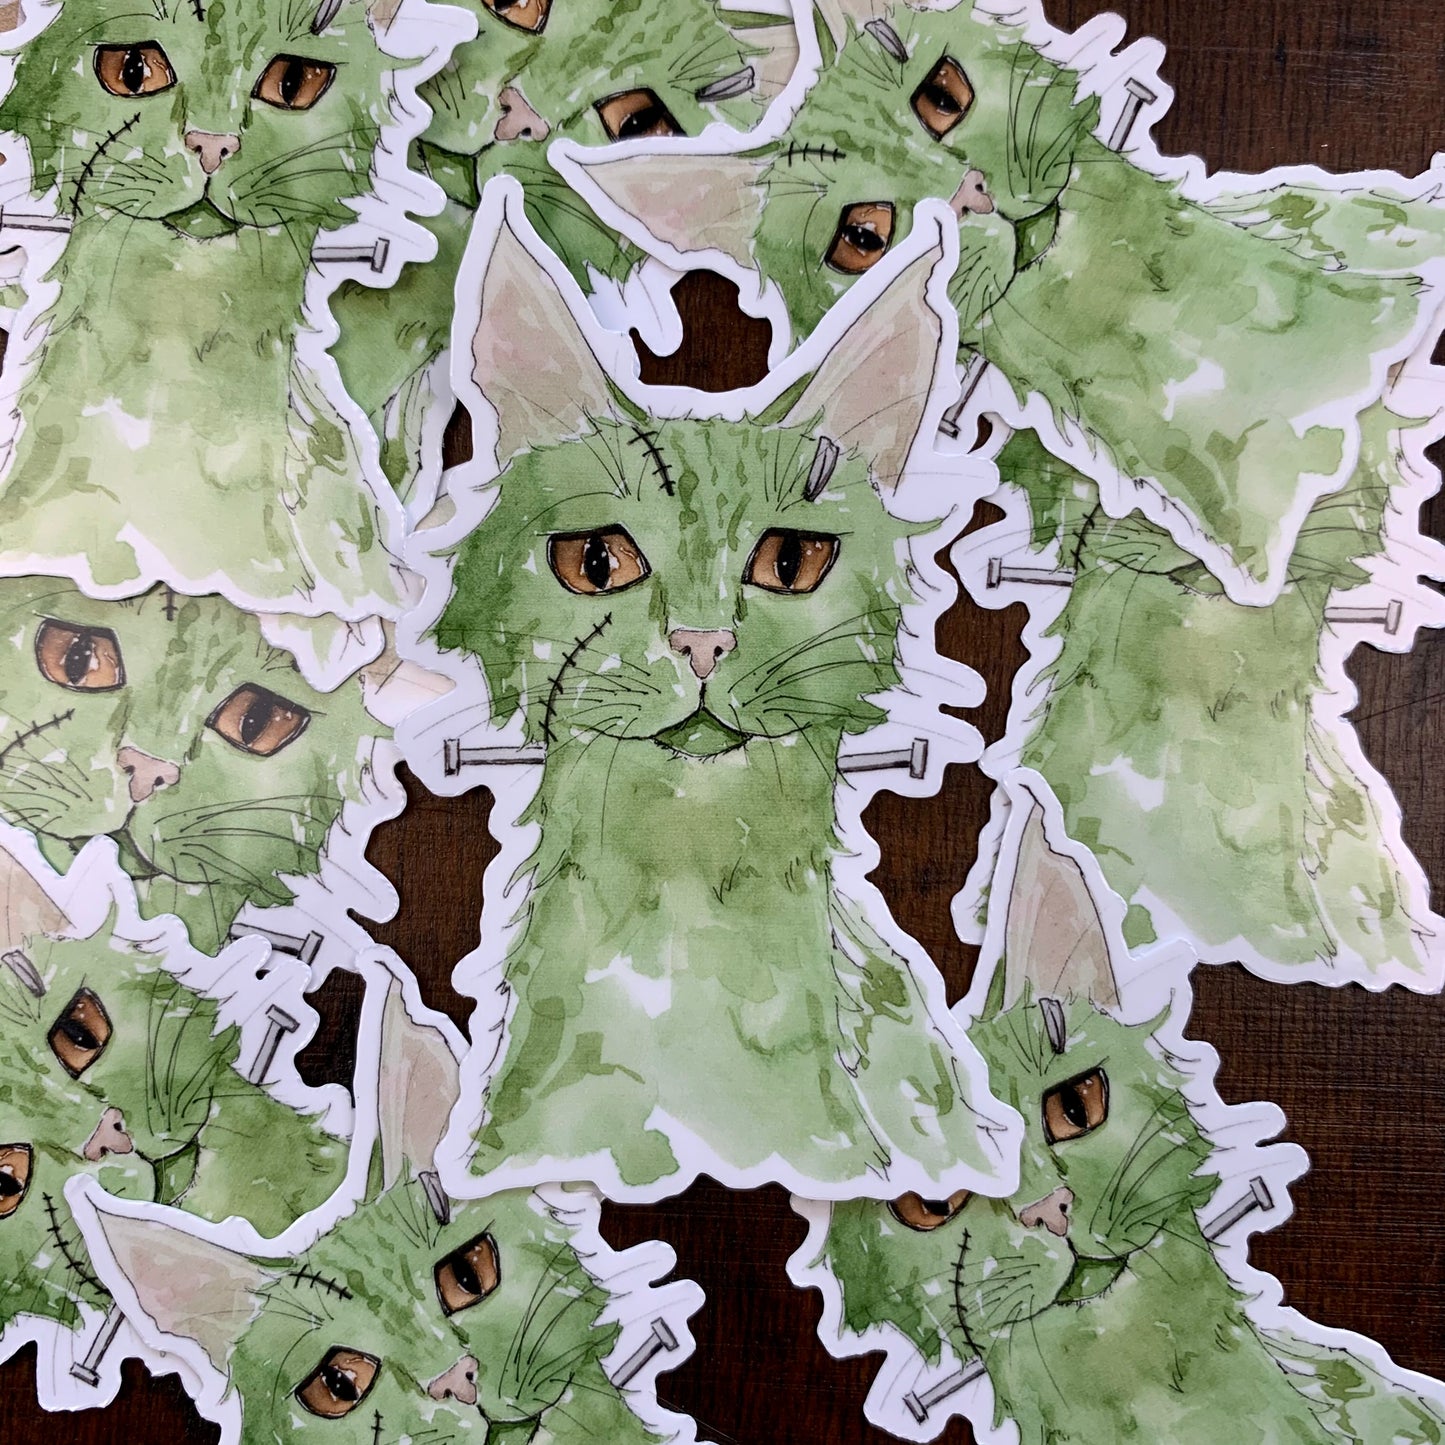 Parmesan the Cat as Frankenstein Vinyl Sticker